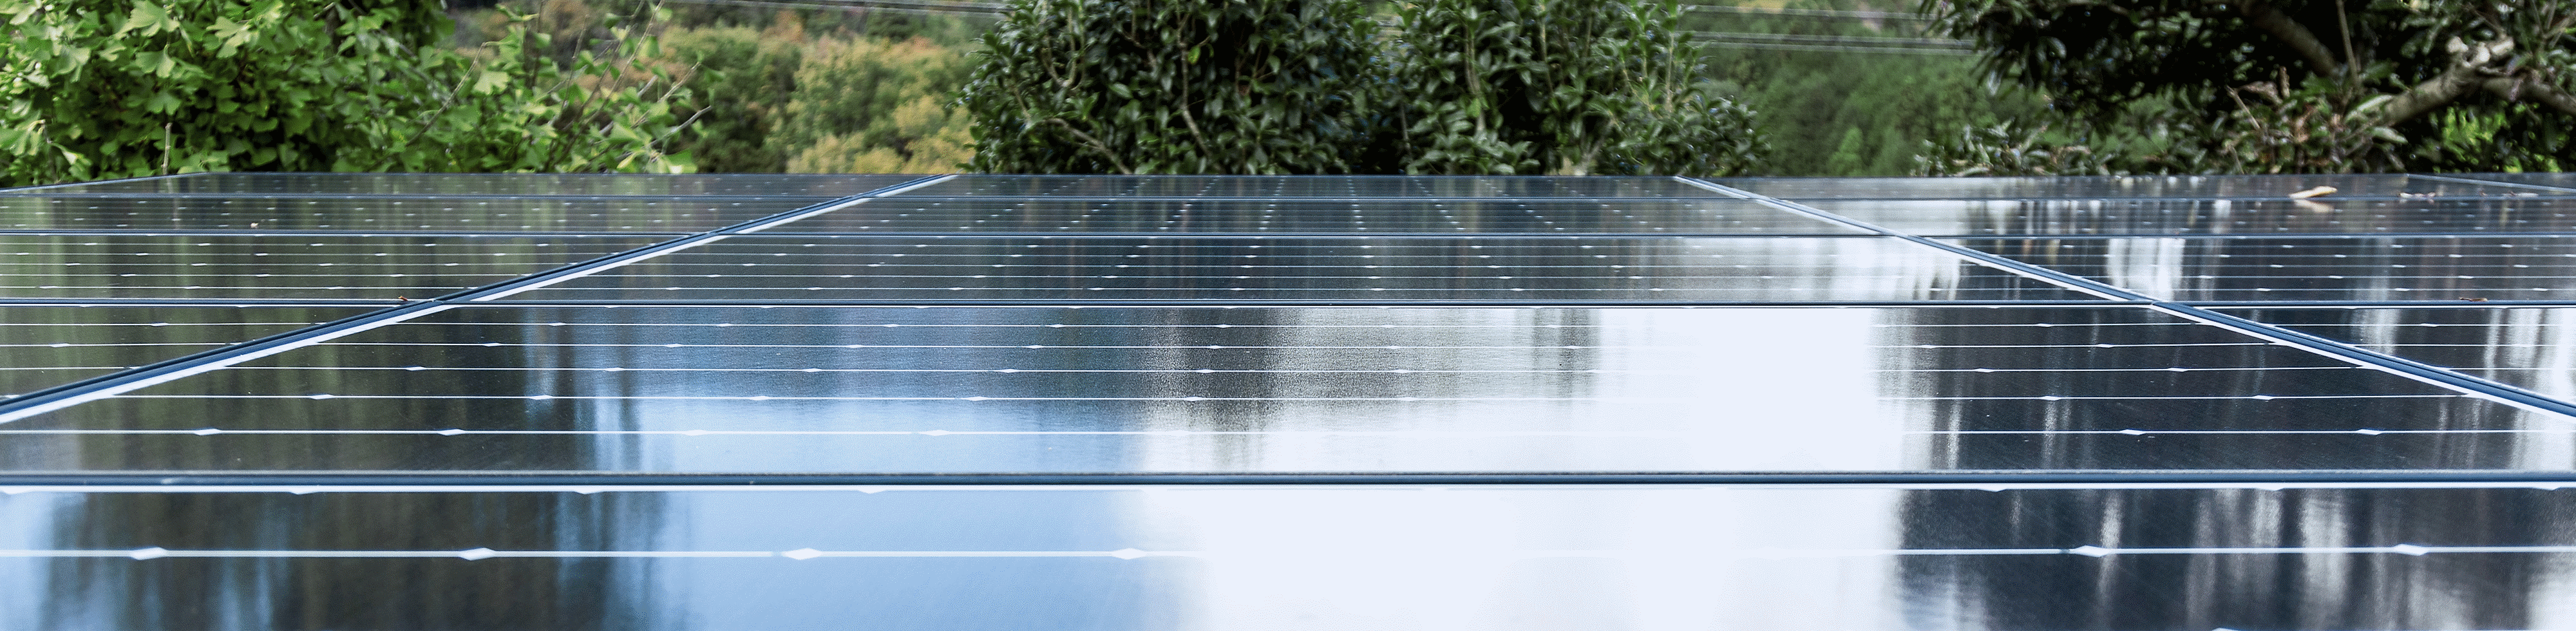 Imagine cu acoperișul unei fabrici, acoperit cu panouri solare